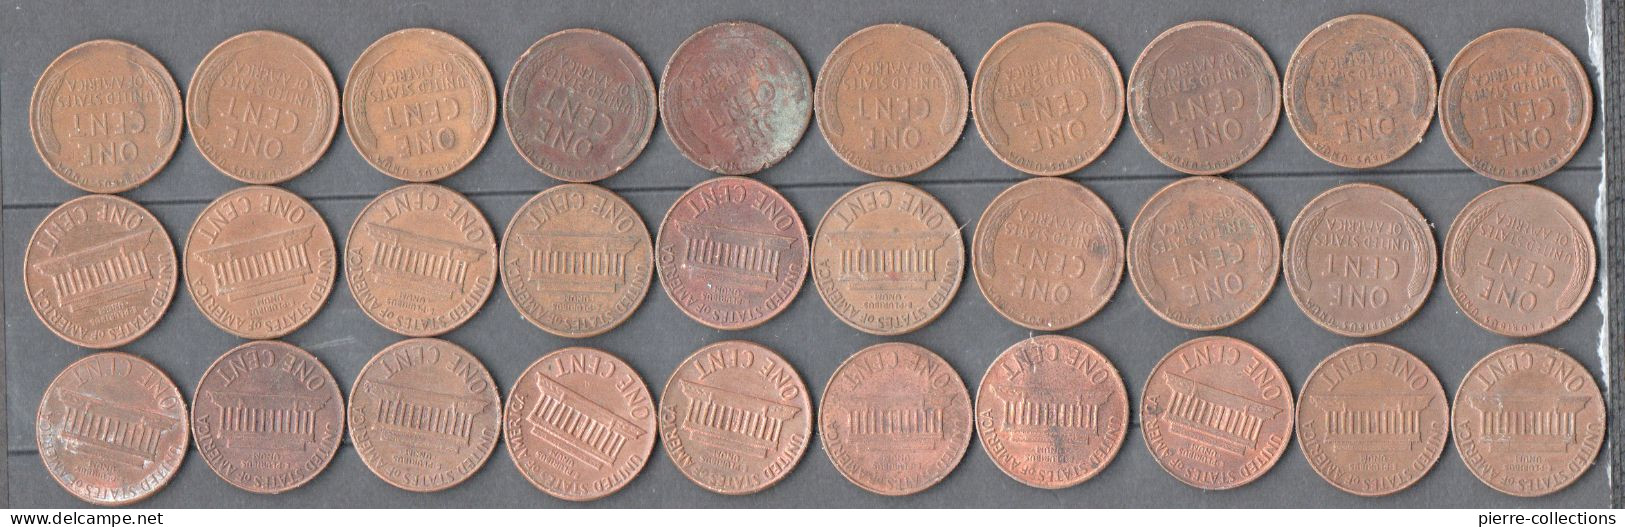 Etats-Unis - Lot De 30 Monnaies Différentes - One Cent - Abraham Lincoln - Andere - Amerika